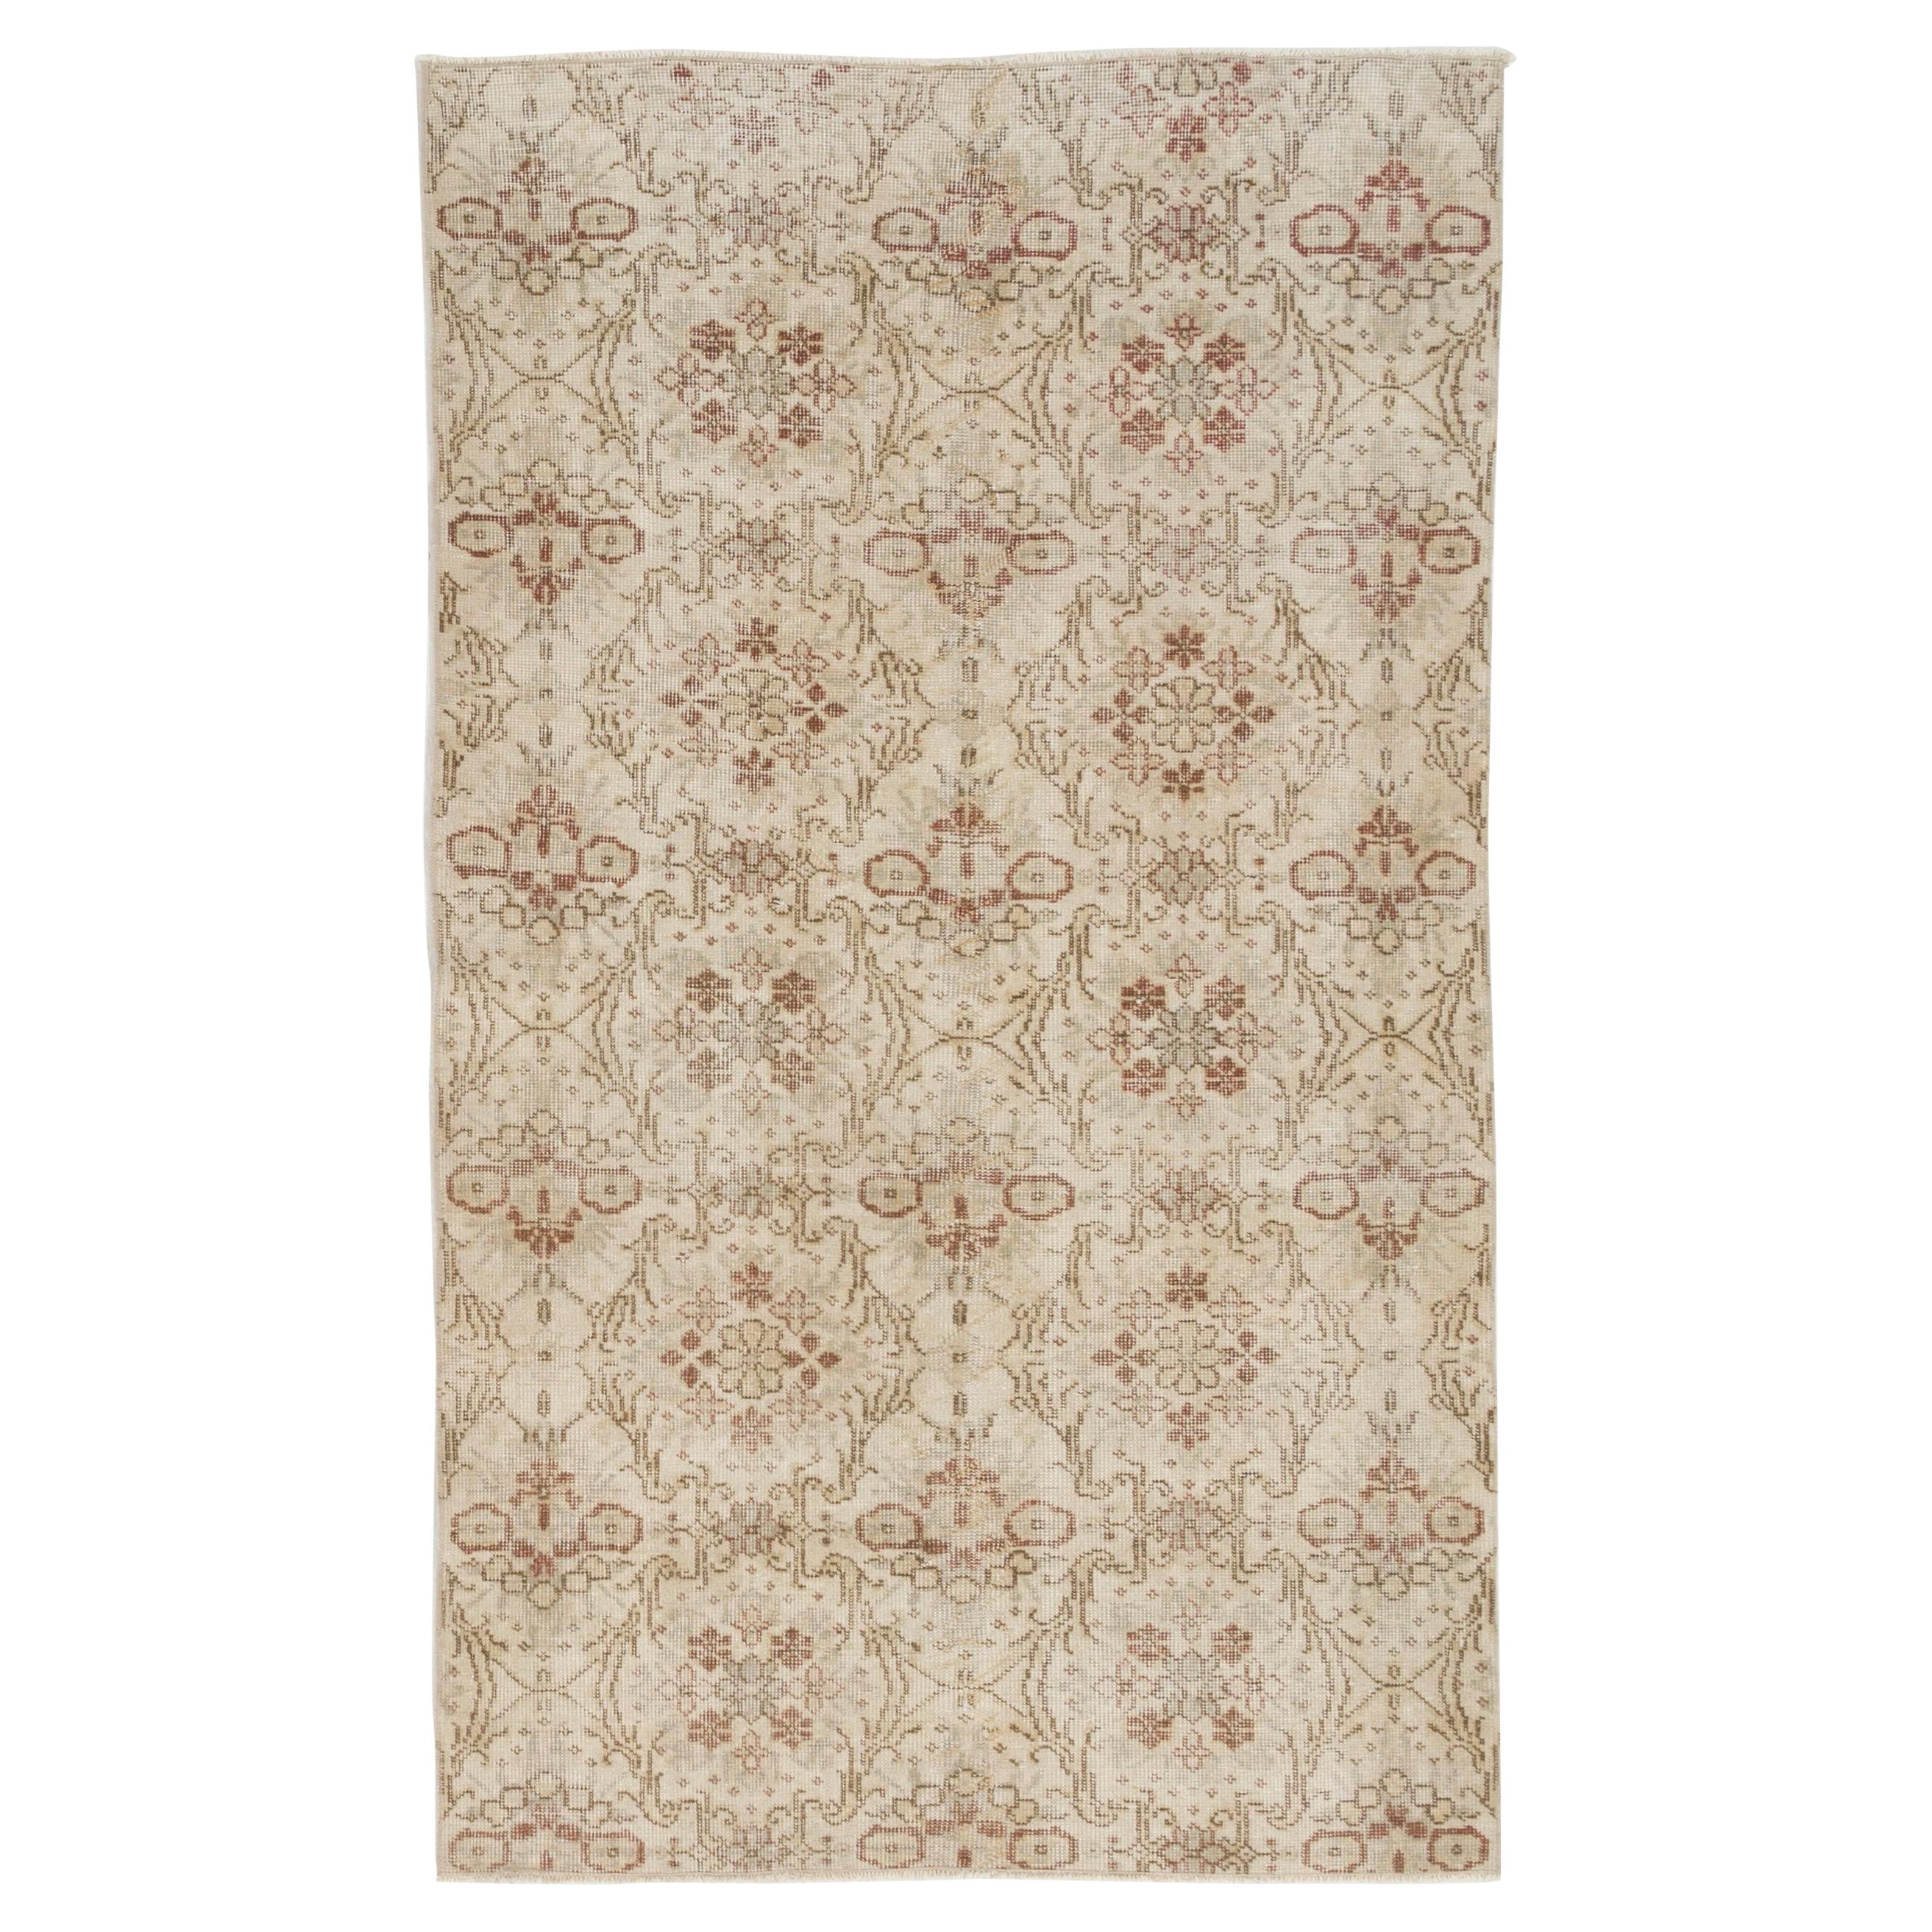 4x6,8 Fuß handgeknüpfter türkischer Oushak-Akzent-Teppich im Vintage-Stil mit Blumenmuster